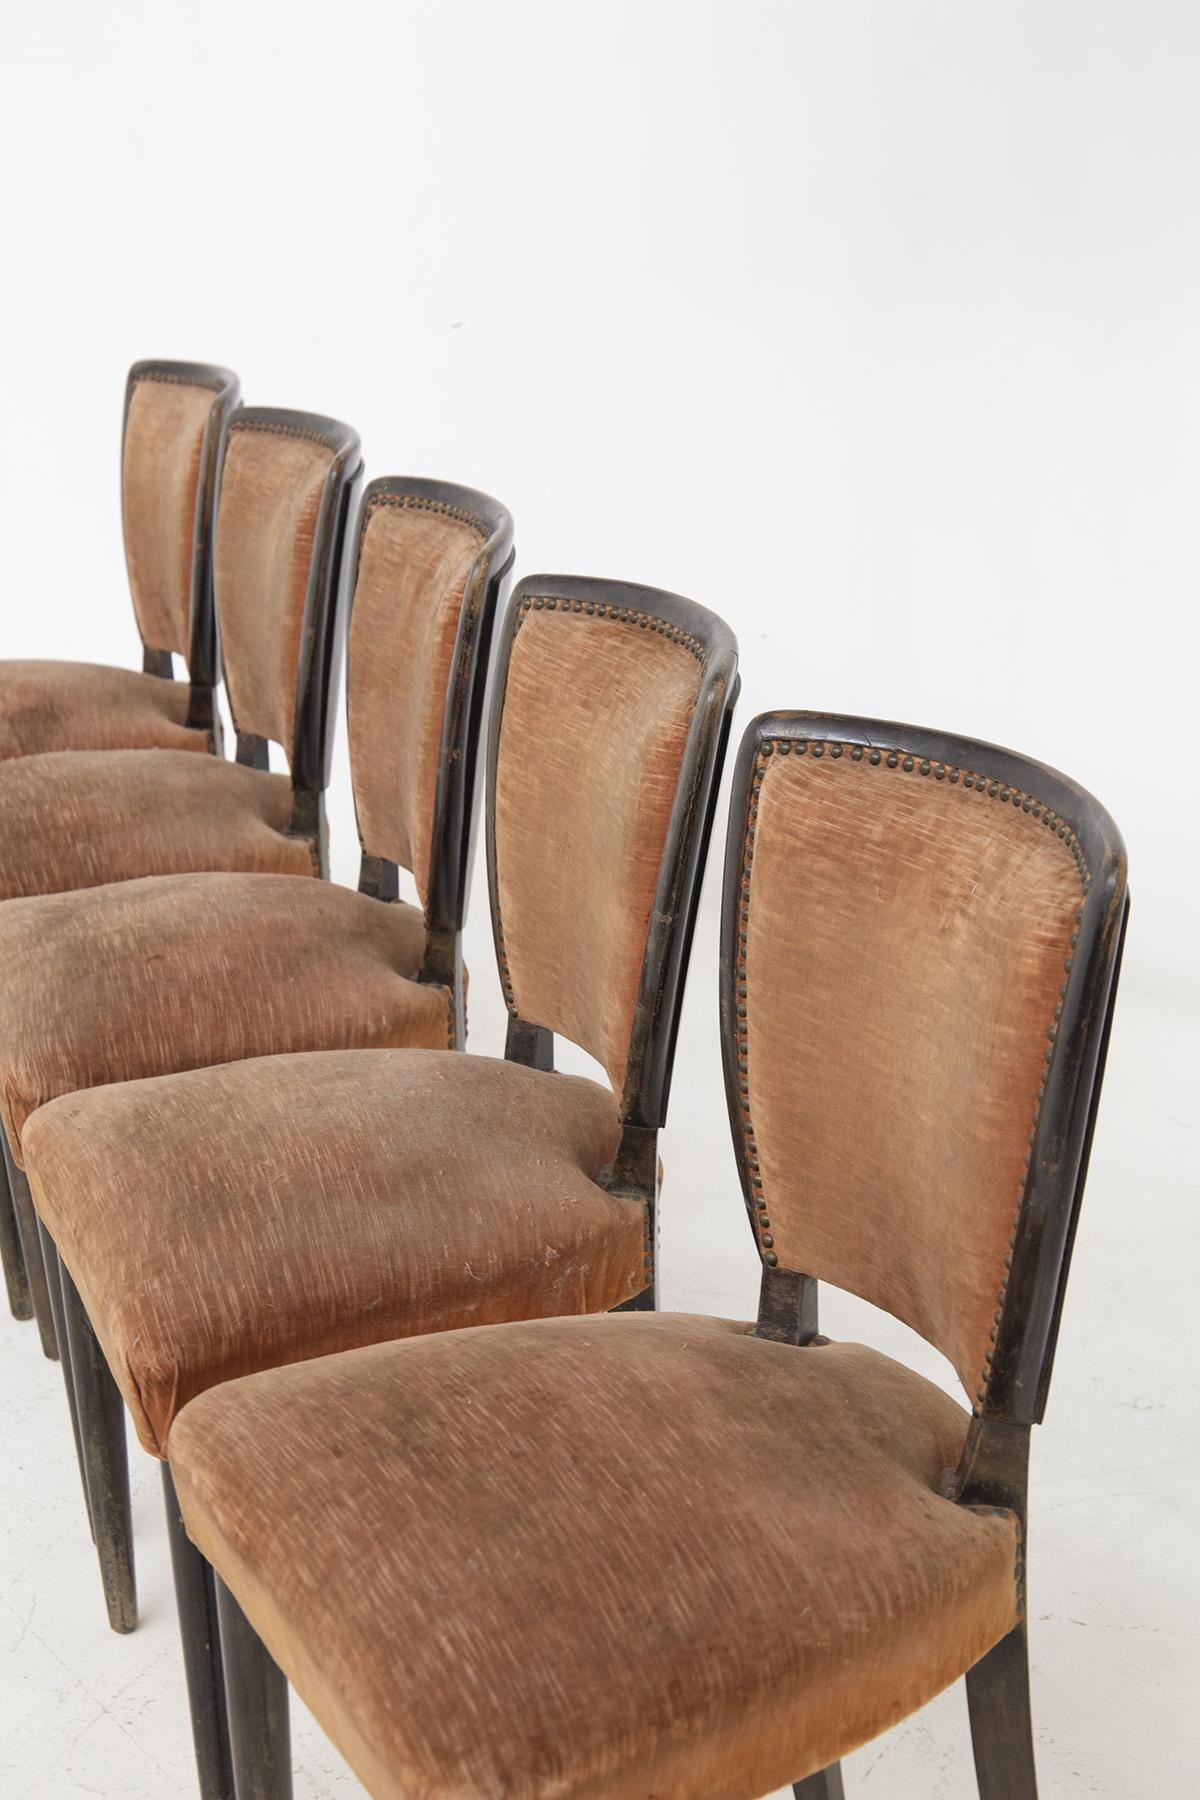 Magnifique ensemble de chaises composé de six chaises en bois des années 1960, de belle facture italienne. Les chaises sont de Melchiorre Bega.
Les chaises ont un cadre en bois, avec 4 pieds, les deux avant sont cylindriques et droits, les deux